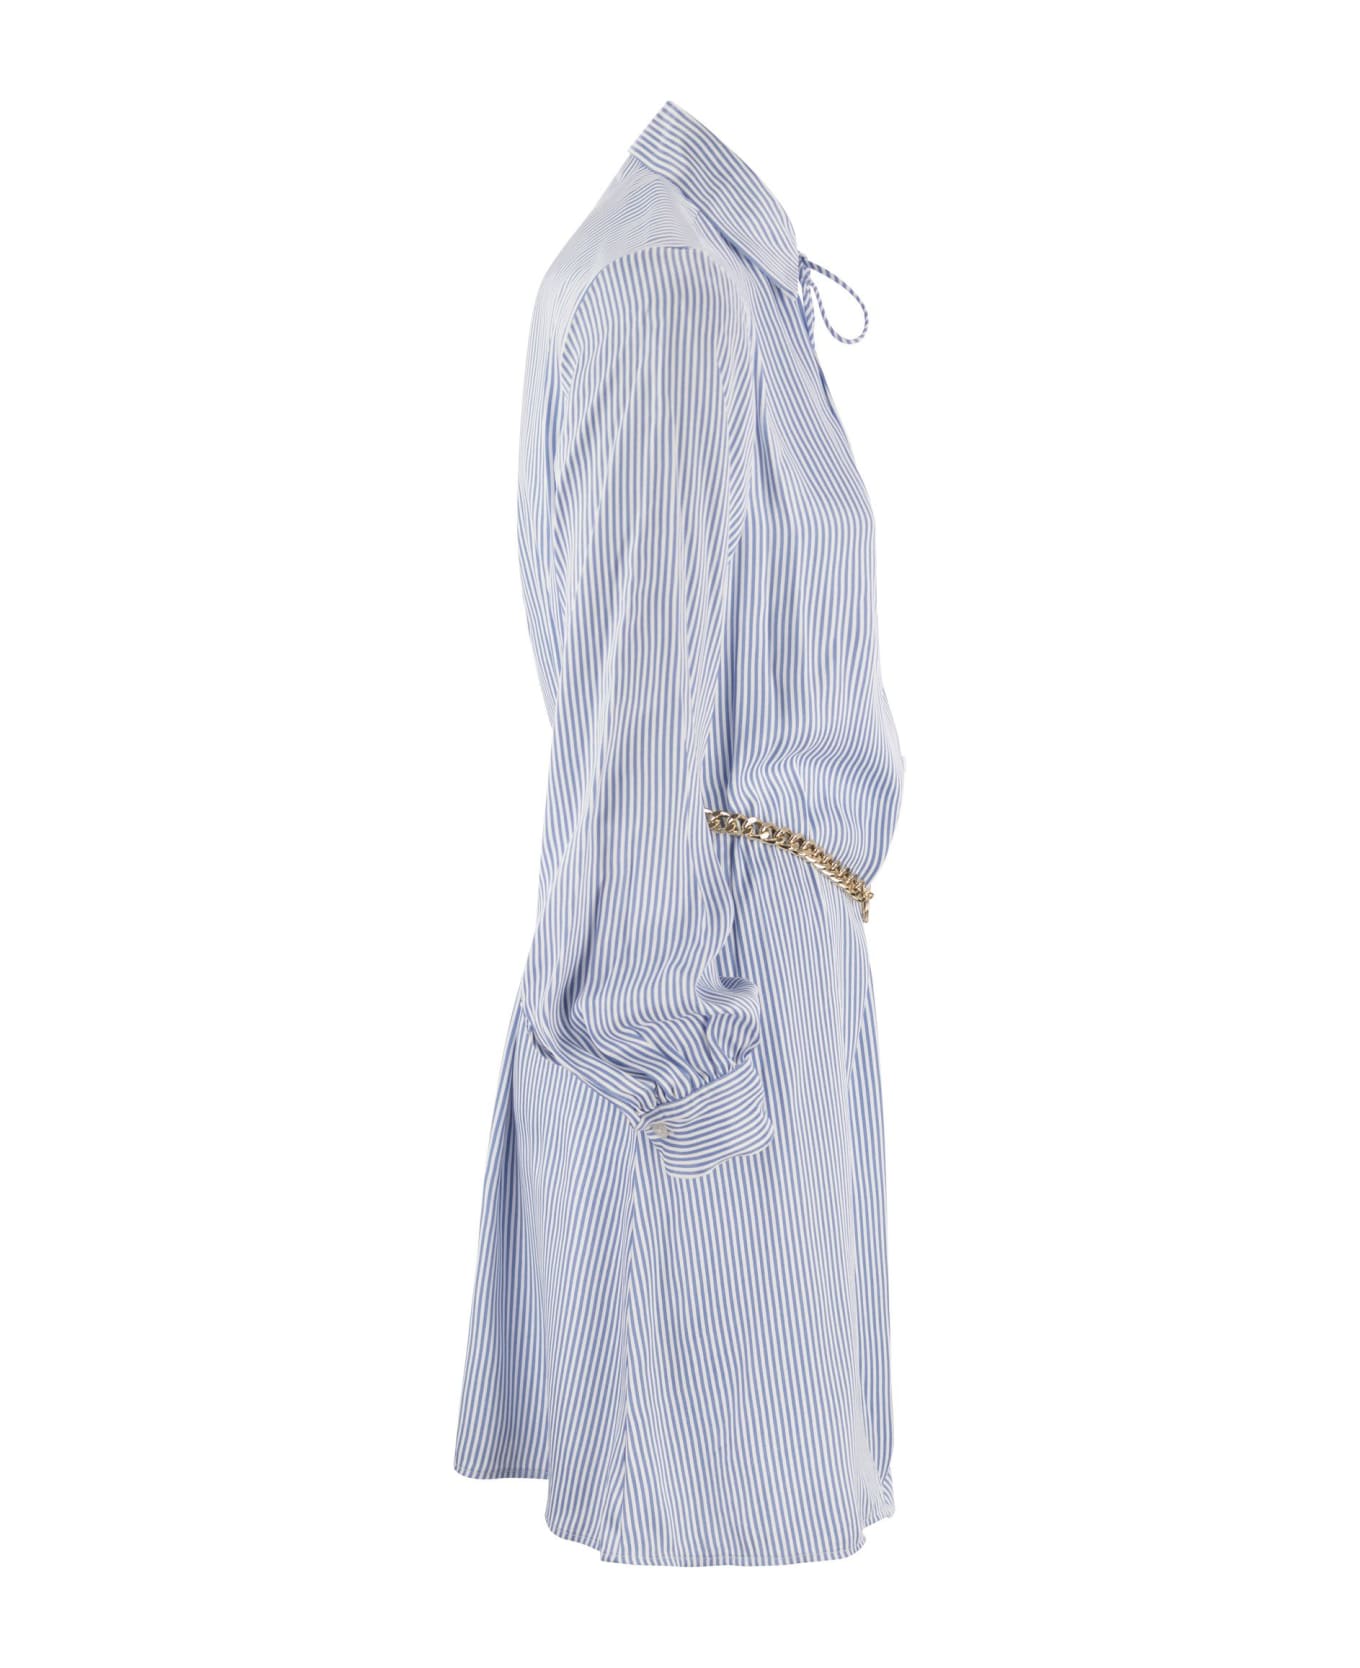 Michael Kors Chemisier Dress With Belt - Light Blue